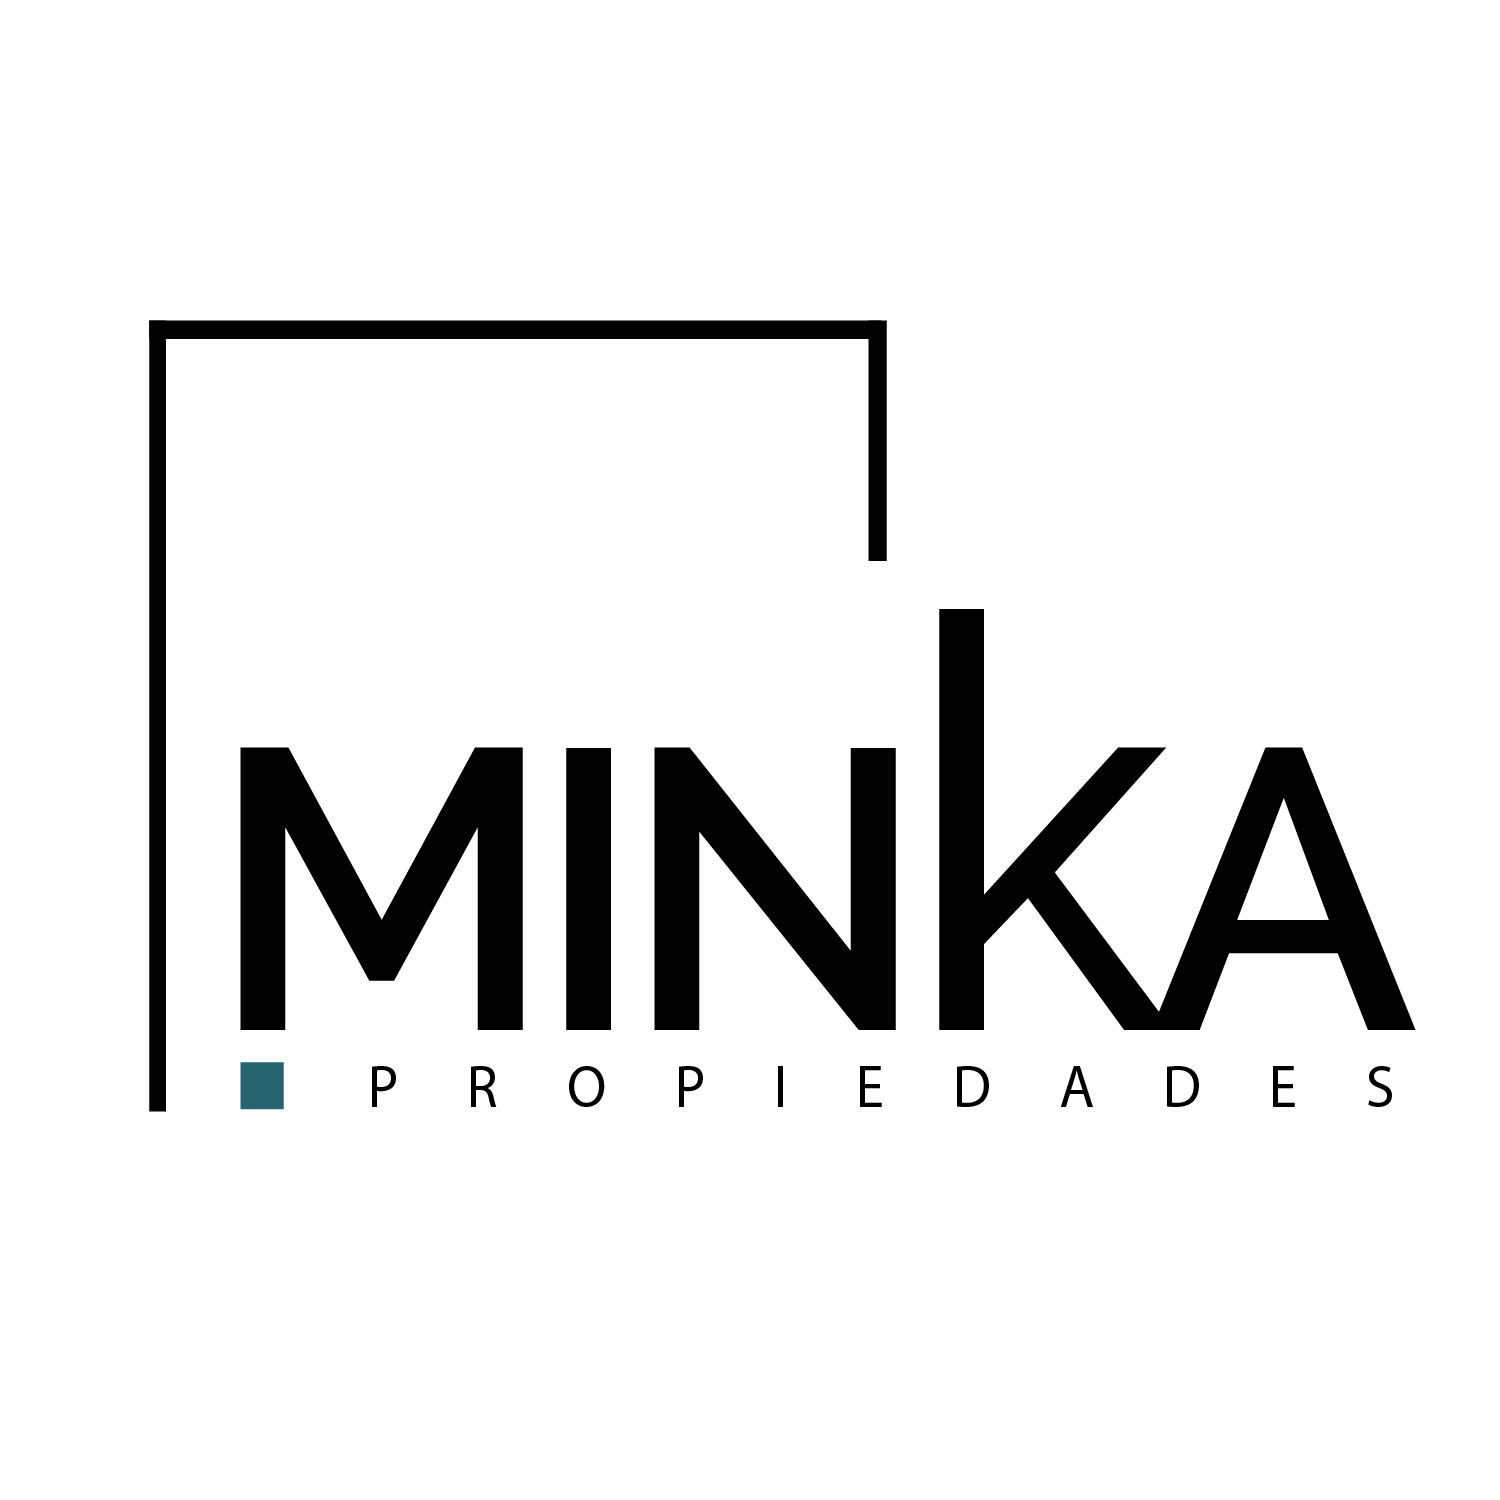 Minka Propiedades